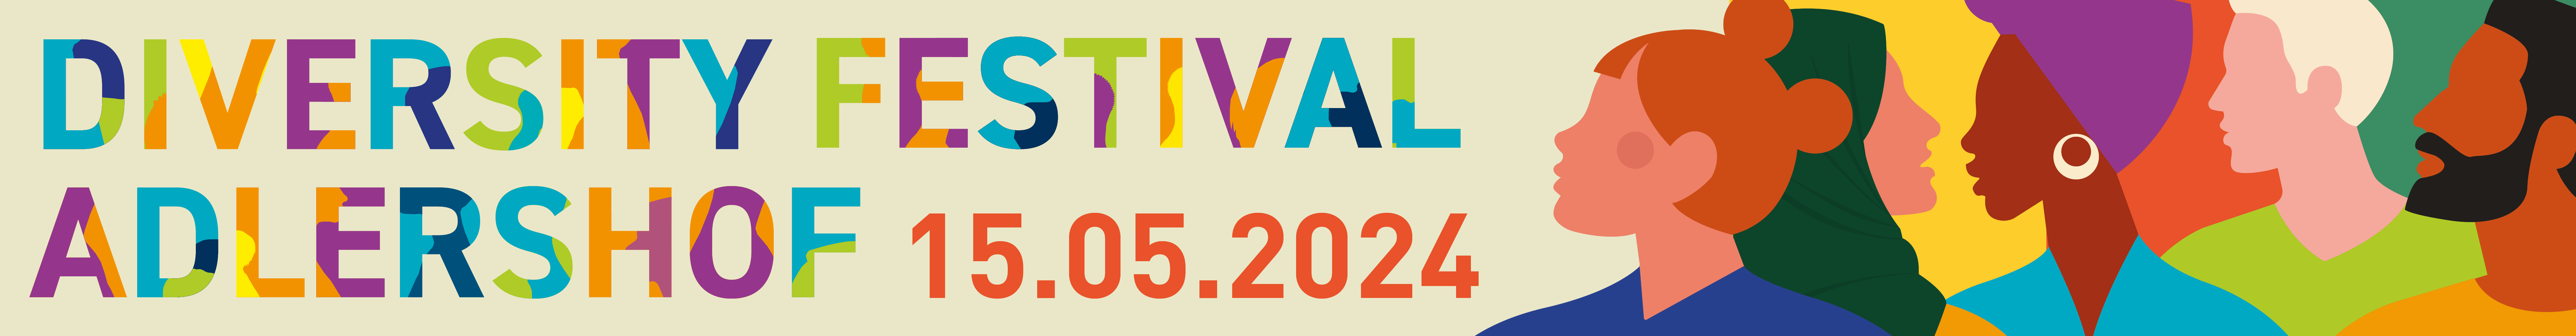 Header-Bild für Diversity Festival 2024